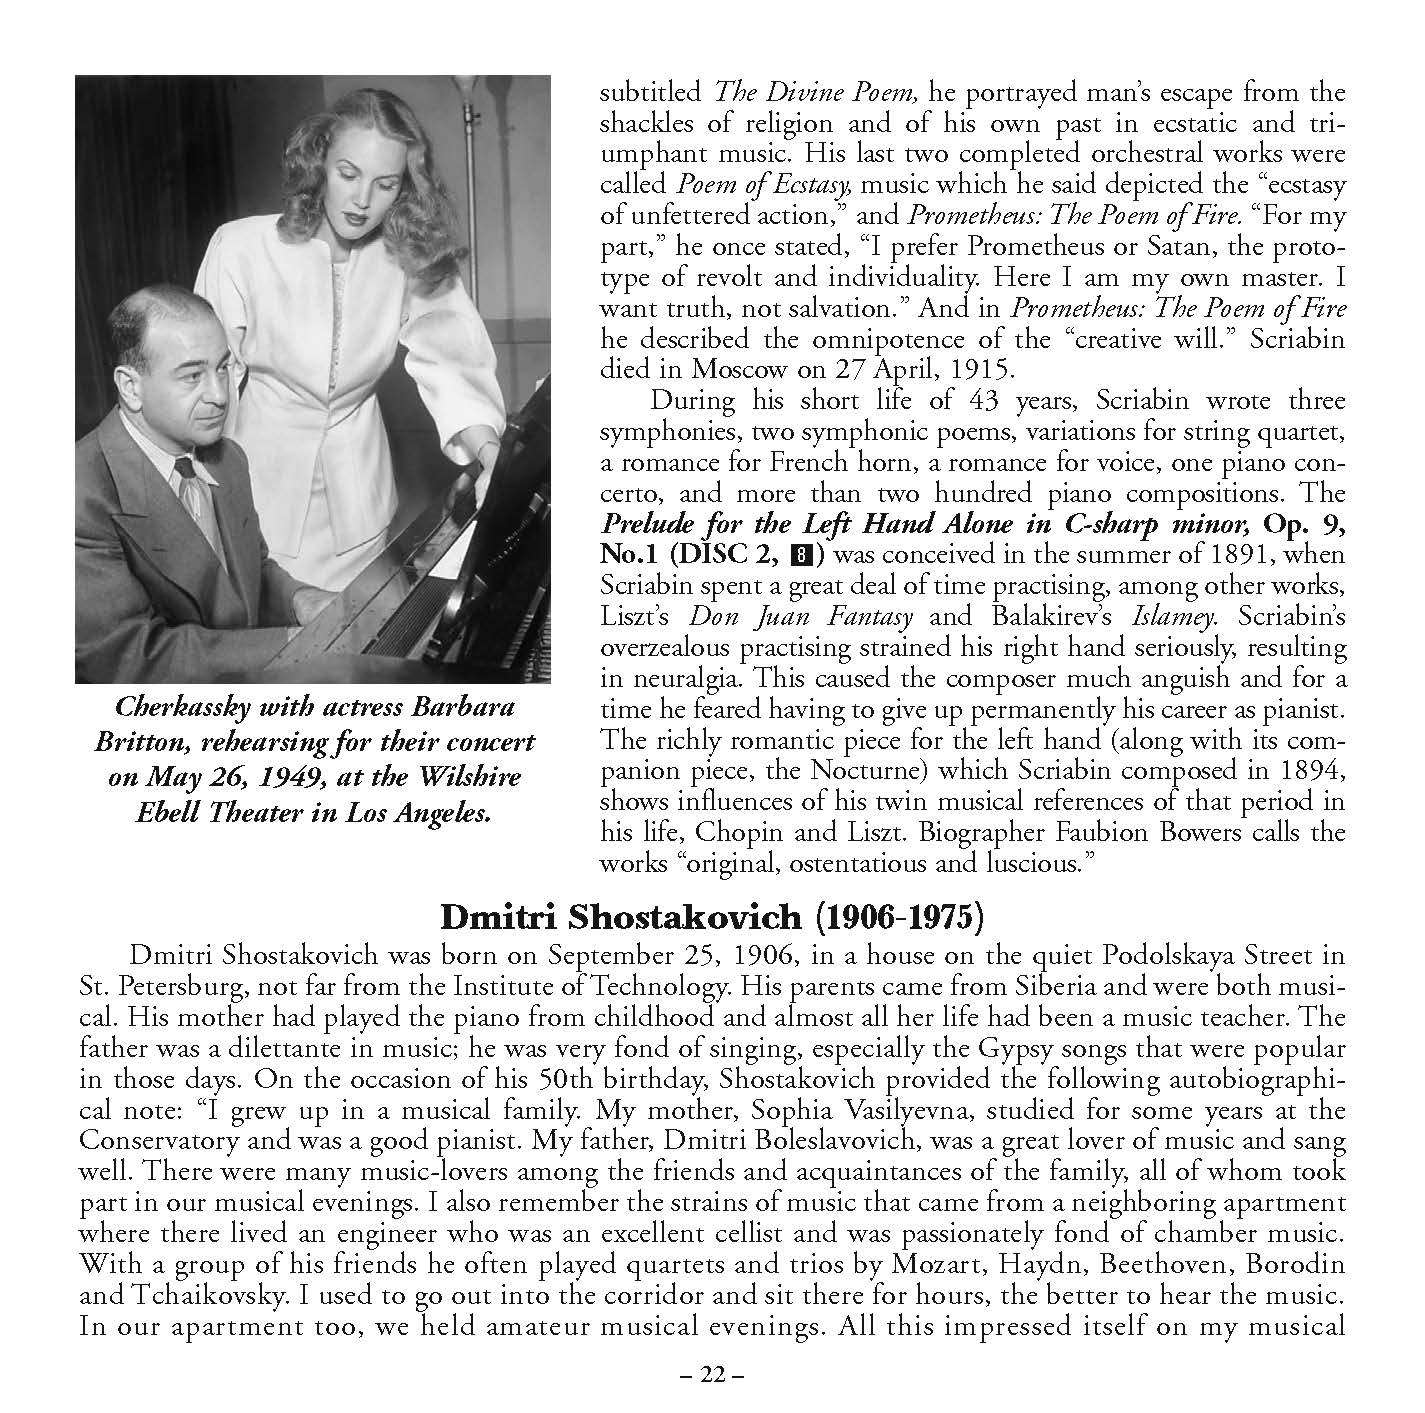 シュラ・チェルカスキー: 歴史的な 1940 年代の録音